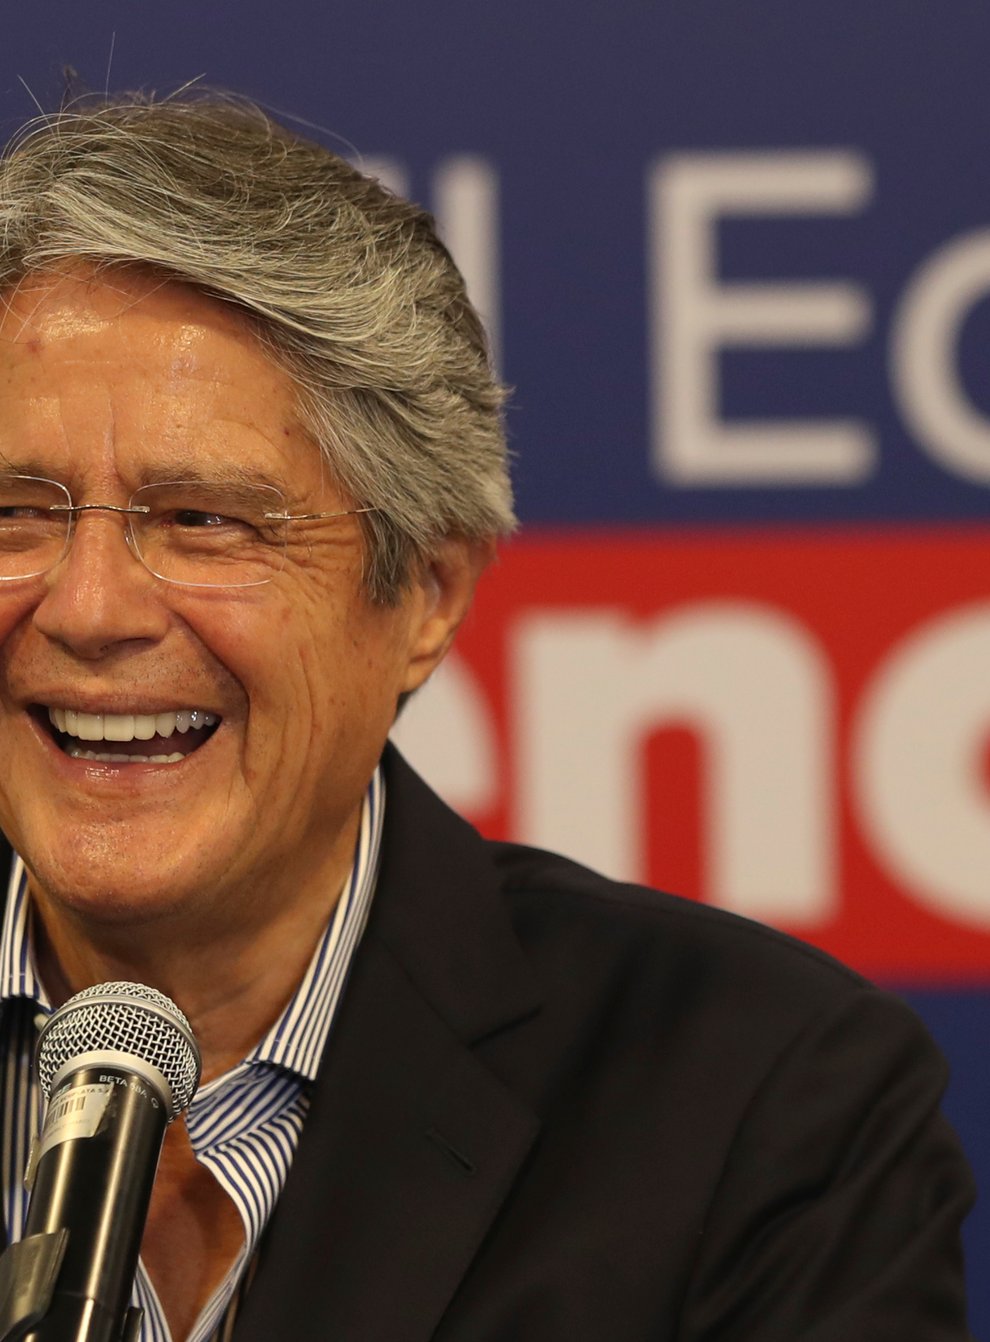 Ecuador’s president-elect Guillermo Lasso smiles